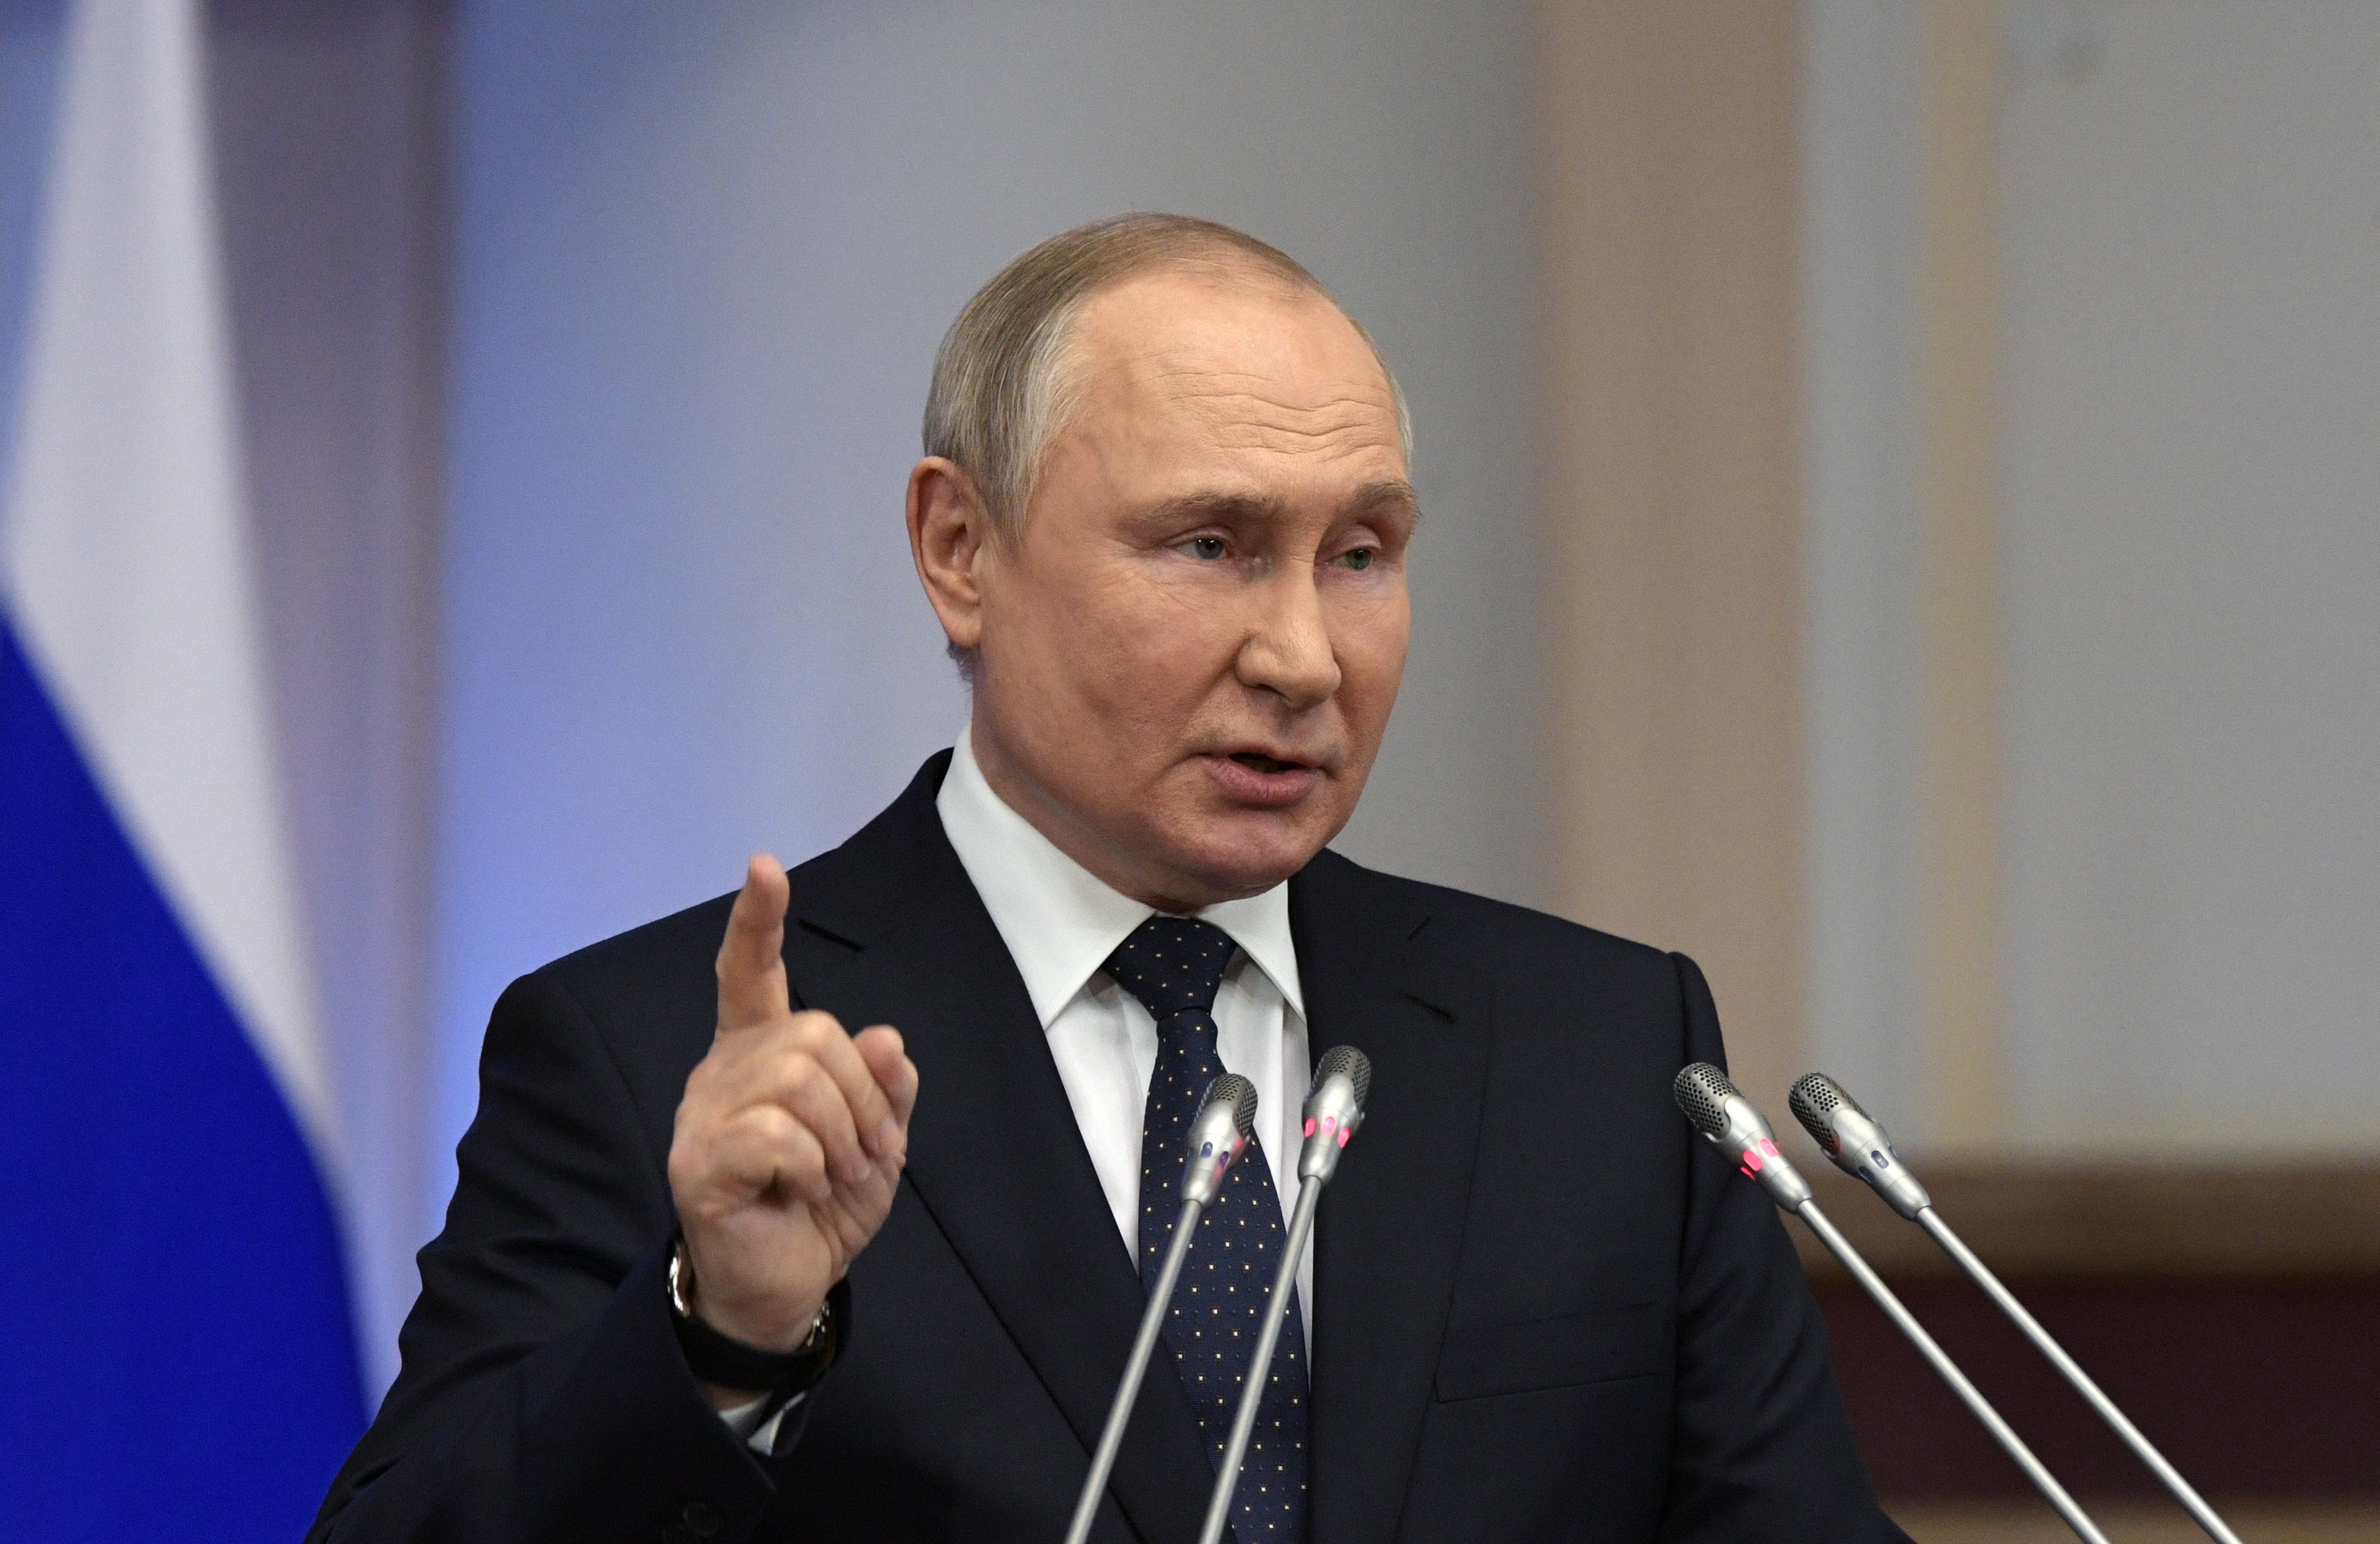 Putin va un pas més enllà i assegura que la fuga d'empreses és bona per a Rússia